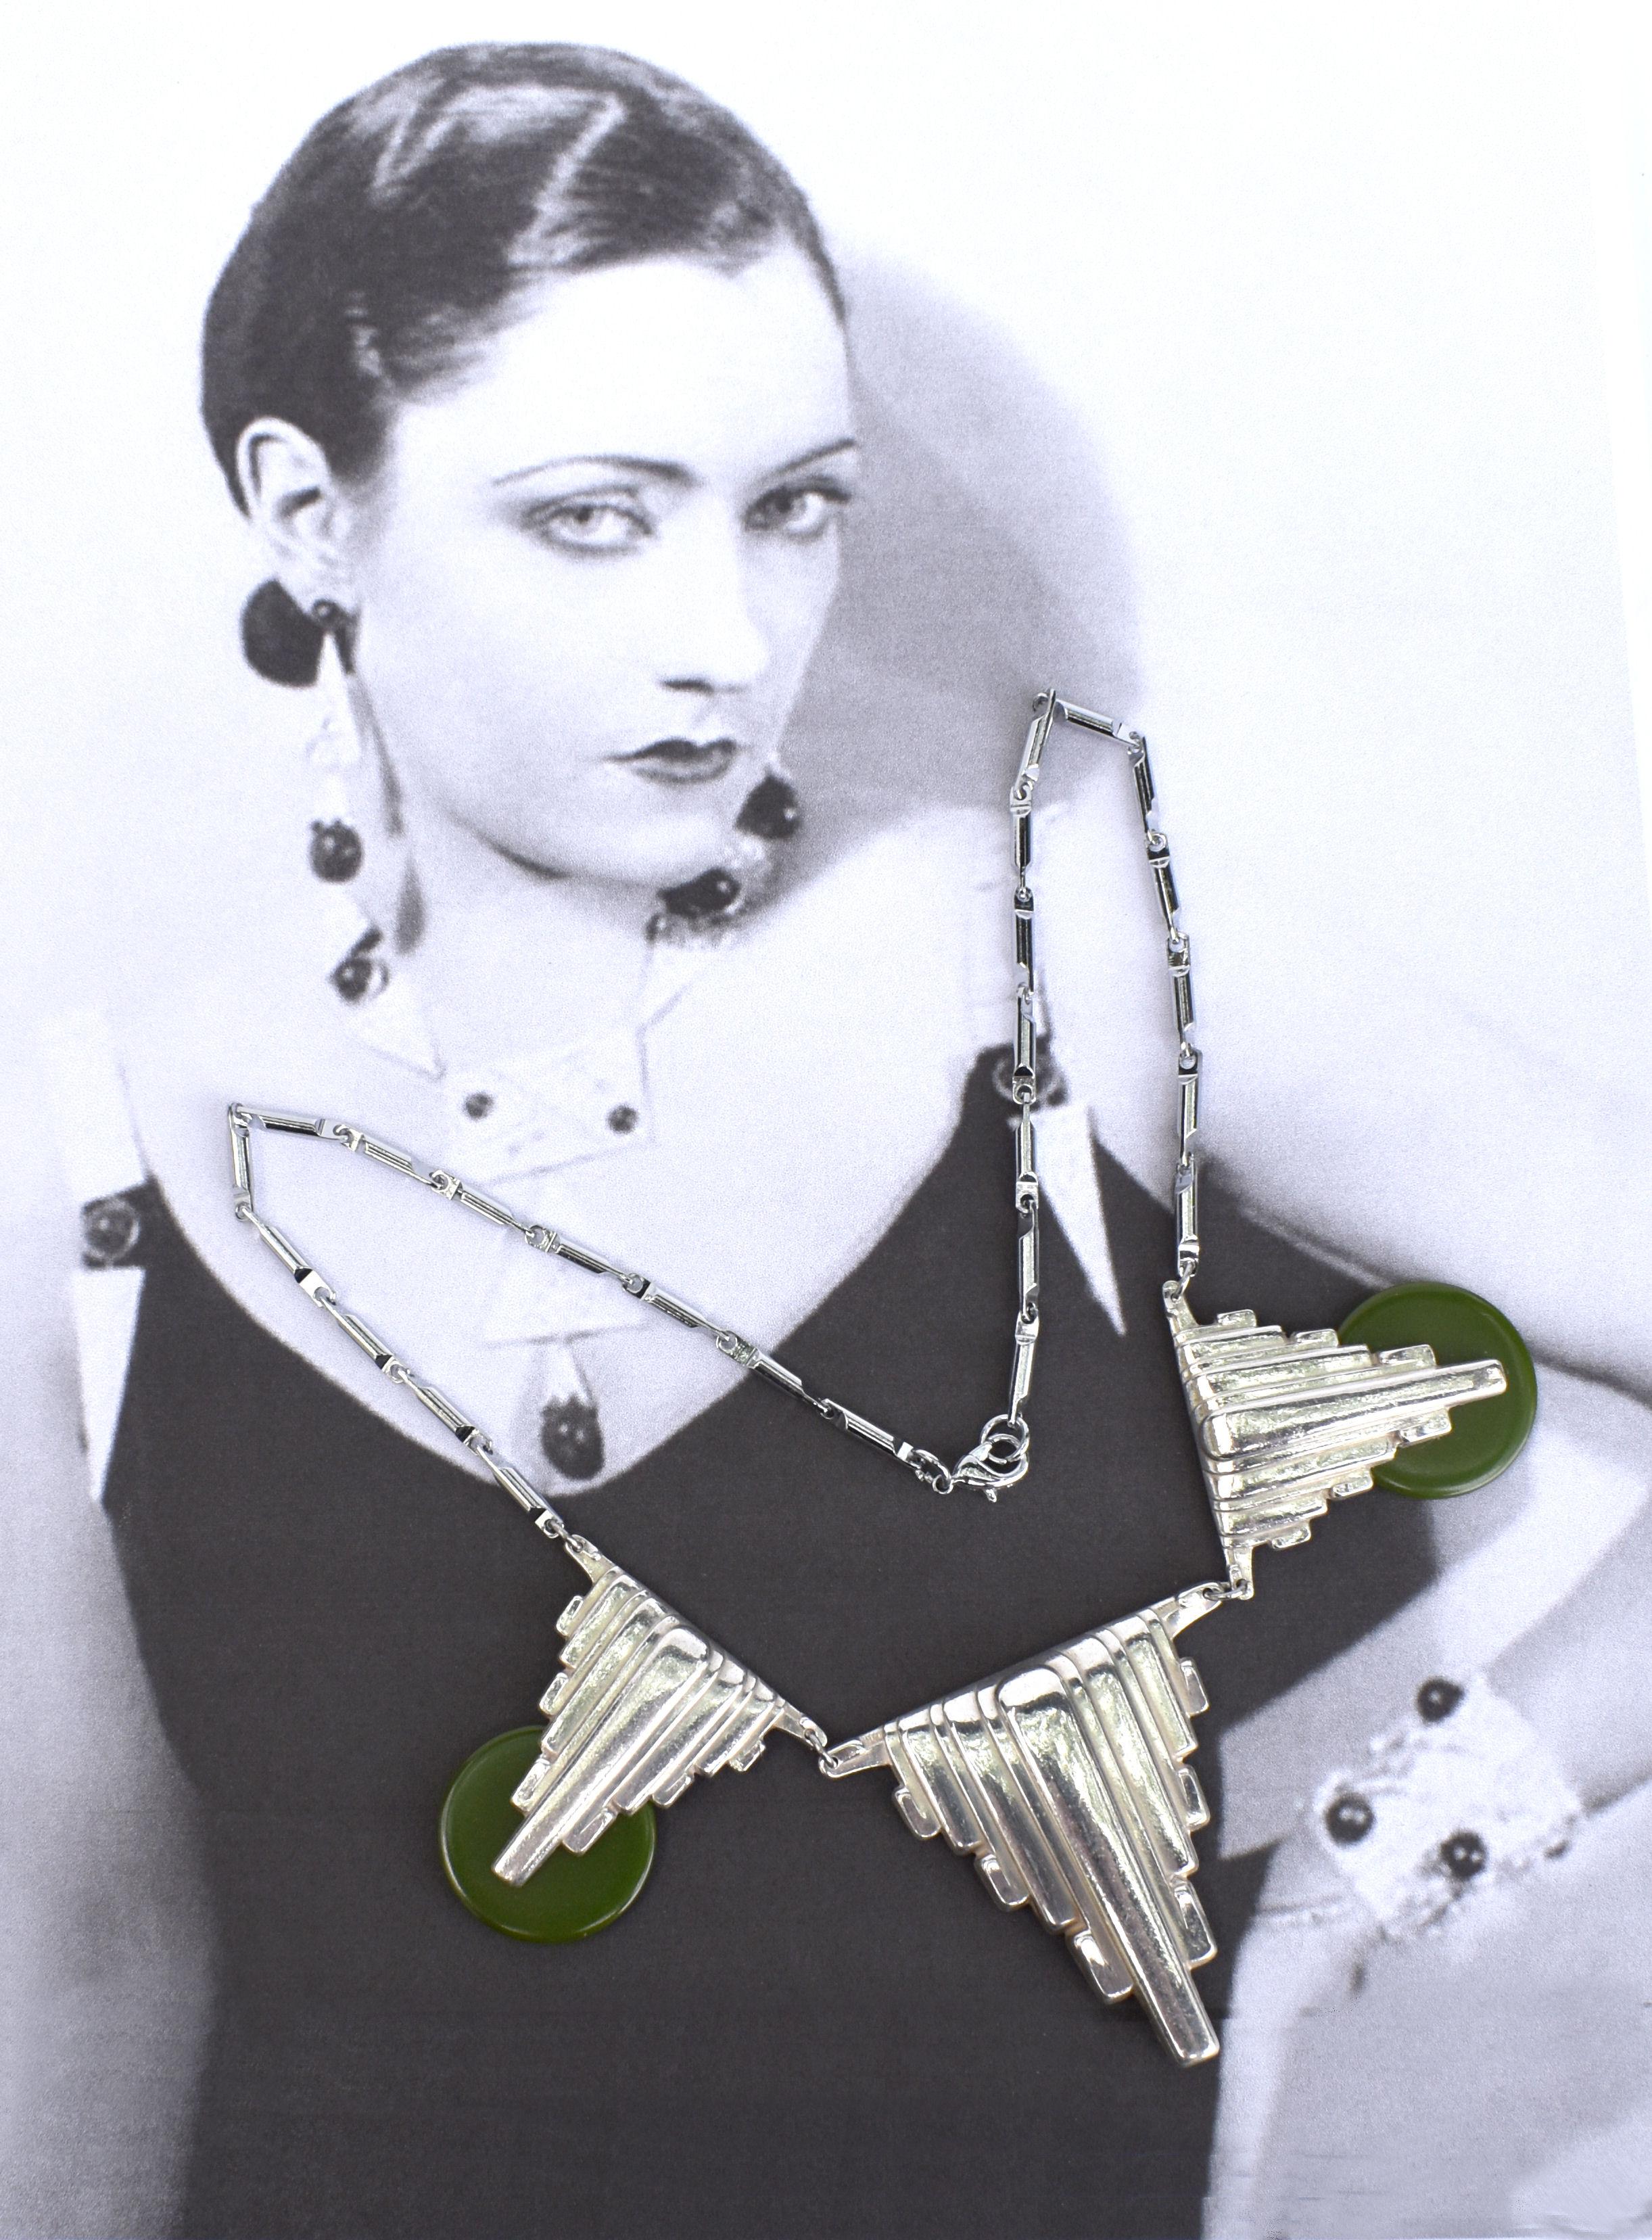 Halskette im modernistischen Art-Deco-Stil aus Goliath-Bakelit in Grüntönen an einer Chromkette. Hummerklauenverschluss an einer verchromten Kette mit einer Gesamtlänge von 45 cm, die knapp unterhalb des Nackens liegt. Schöner Zustand, kein Anlaufen